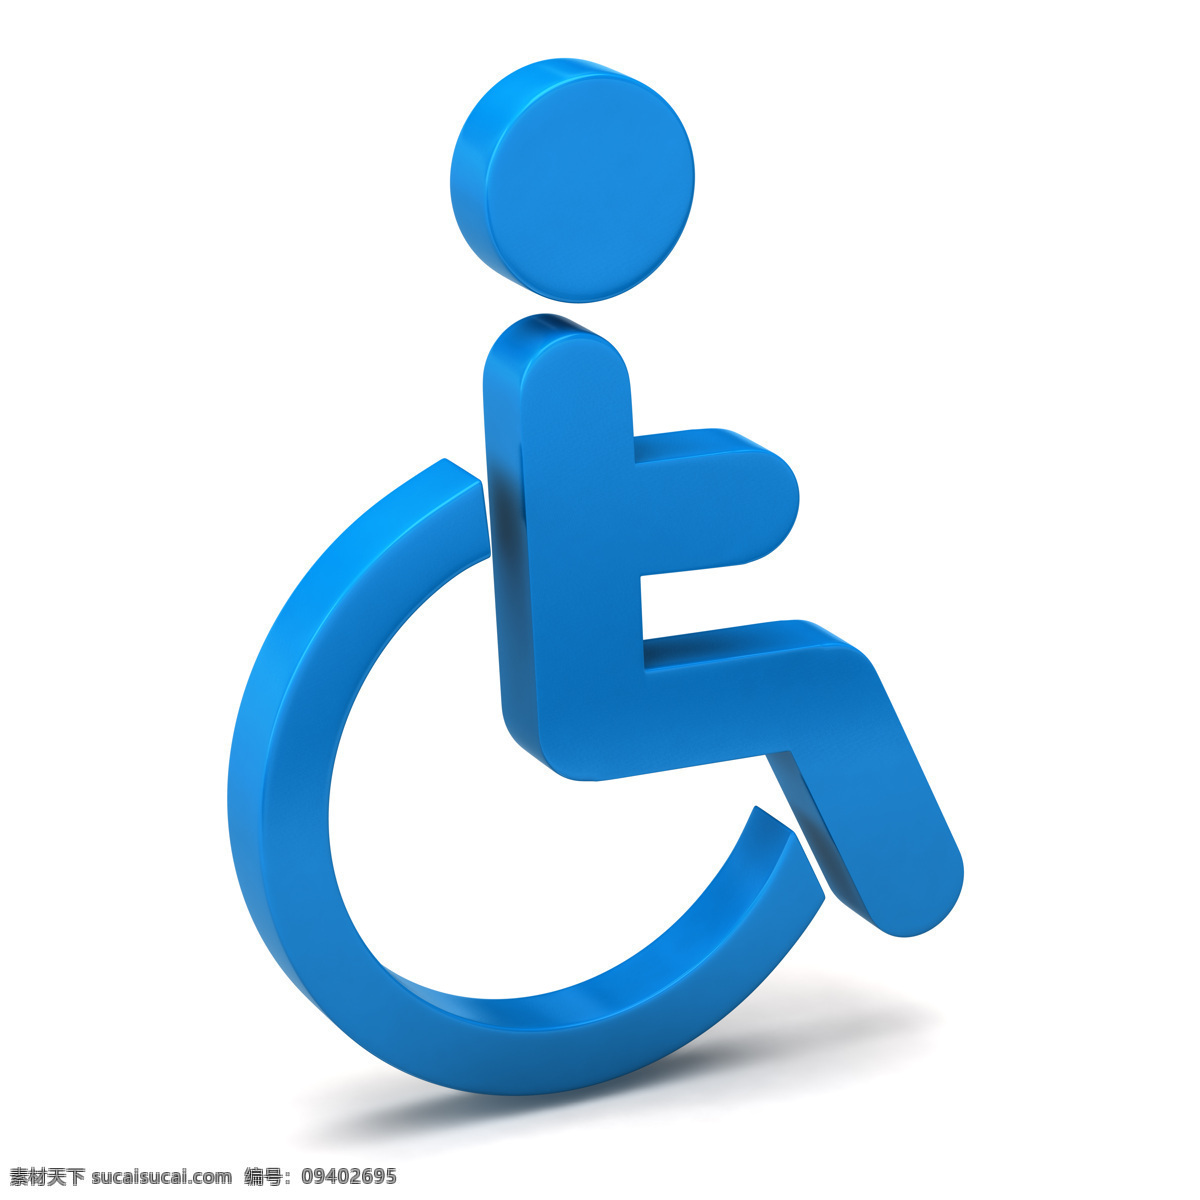 残疾人 标志 残疾人标志 坐 轮椅 3d 小人 轮椅主题 受伤坐轮椅 其他人物 人物图片